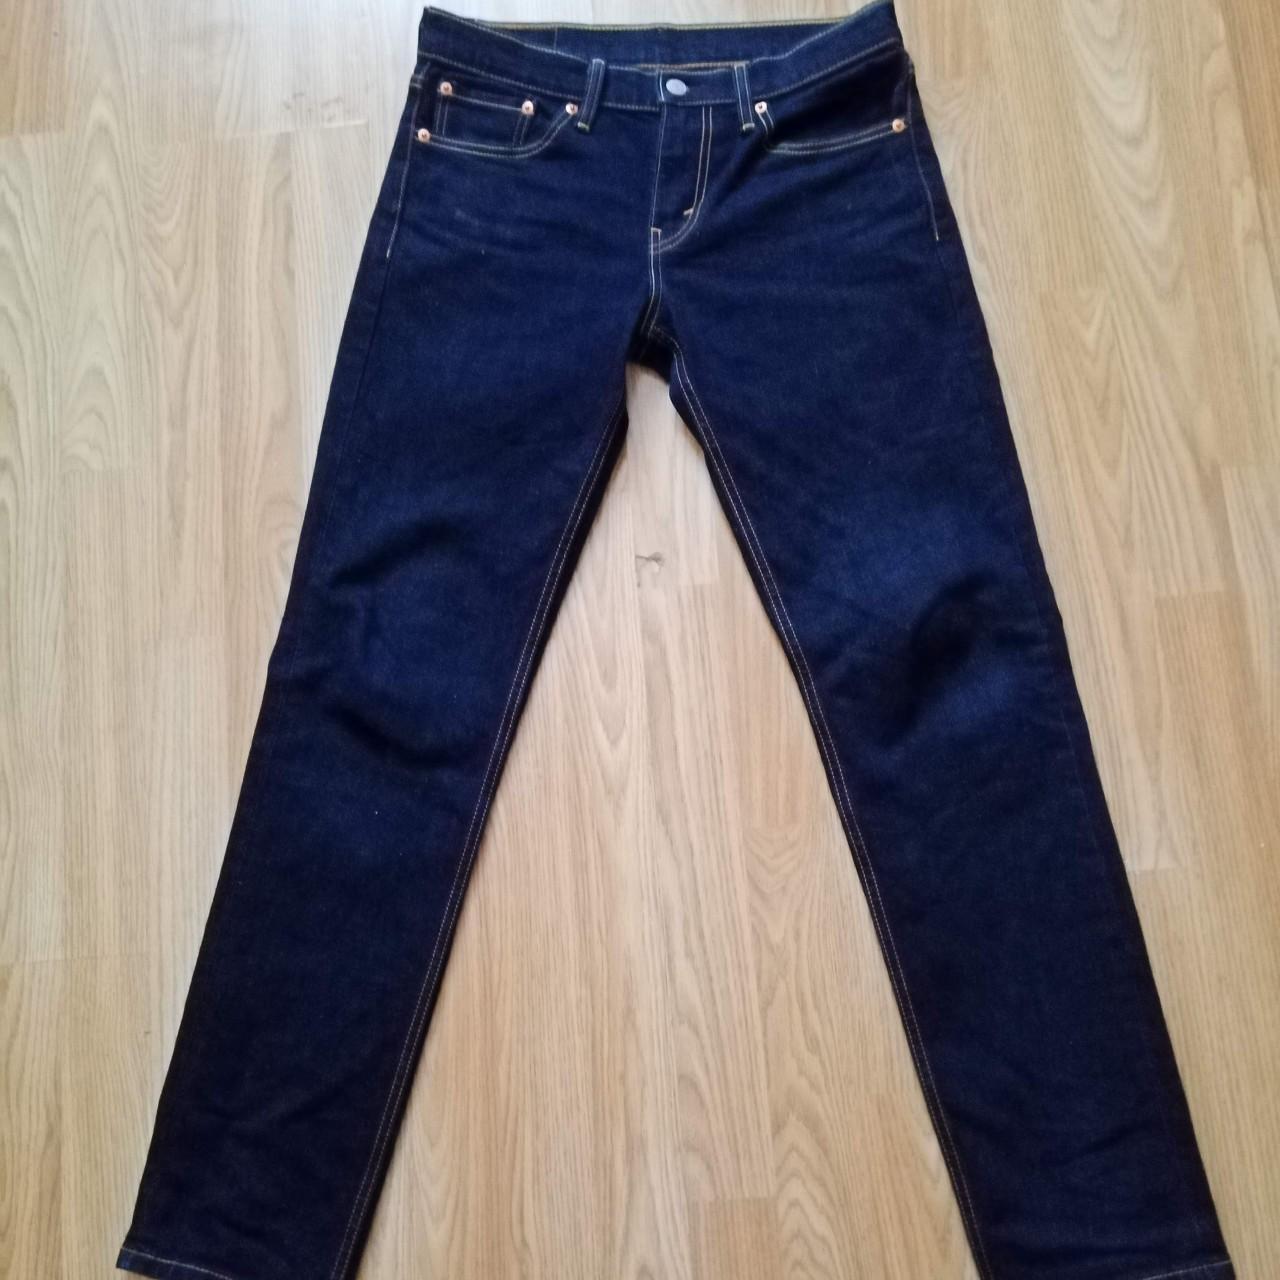 Men's Levi's 511 Jeans (29x32) #LevisJeans... - Depop